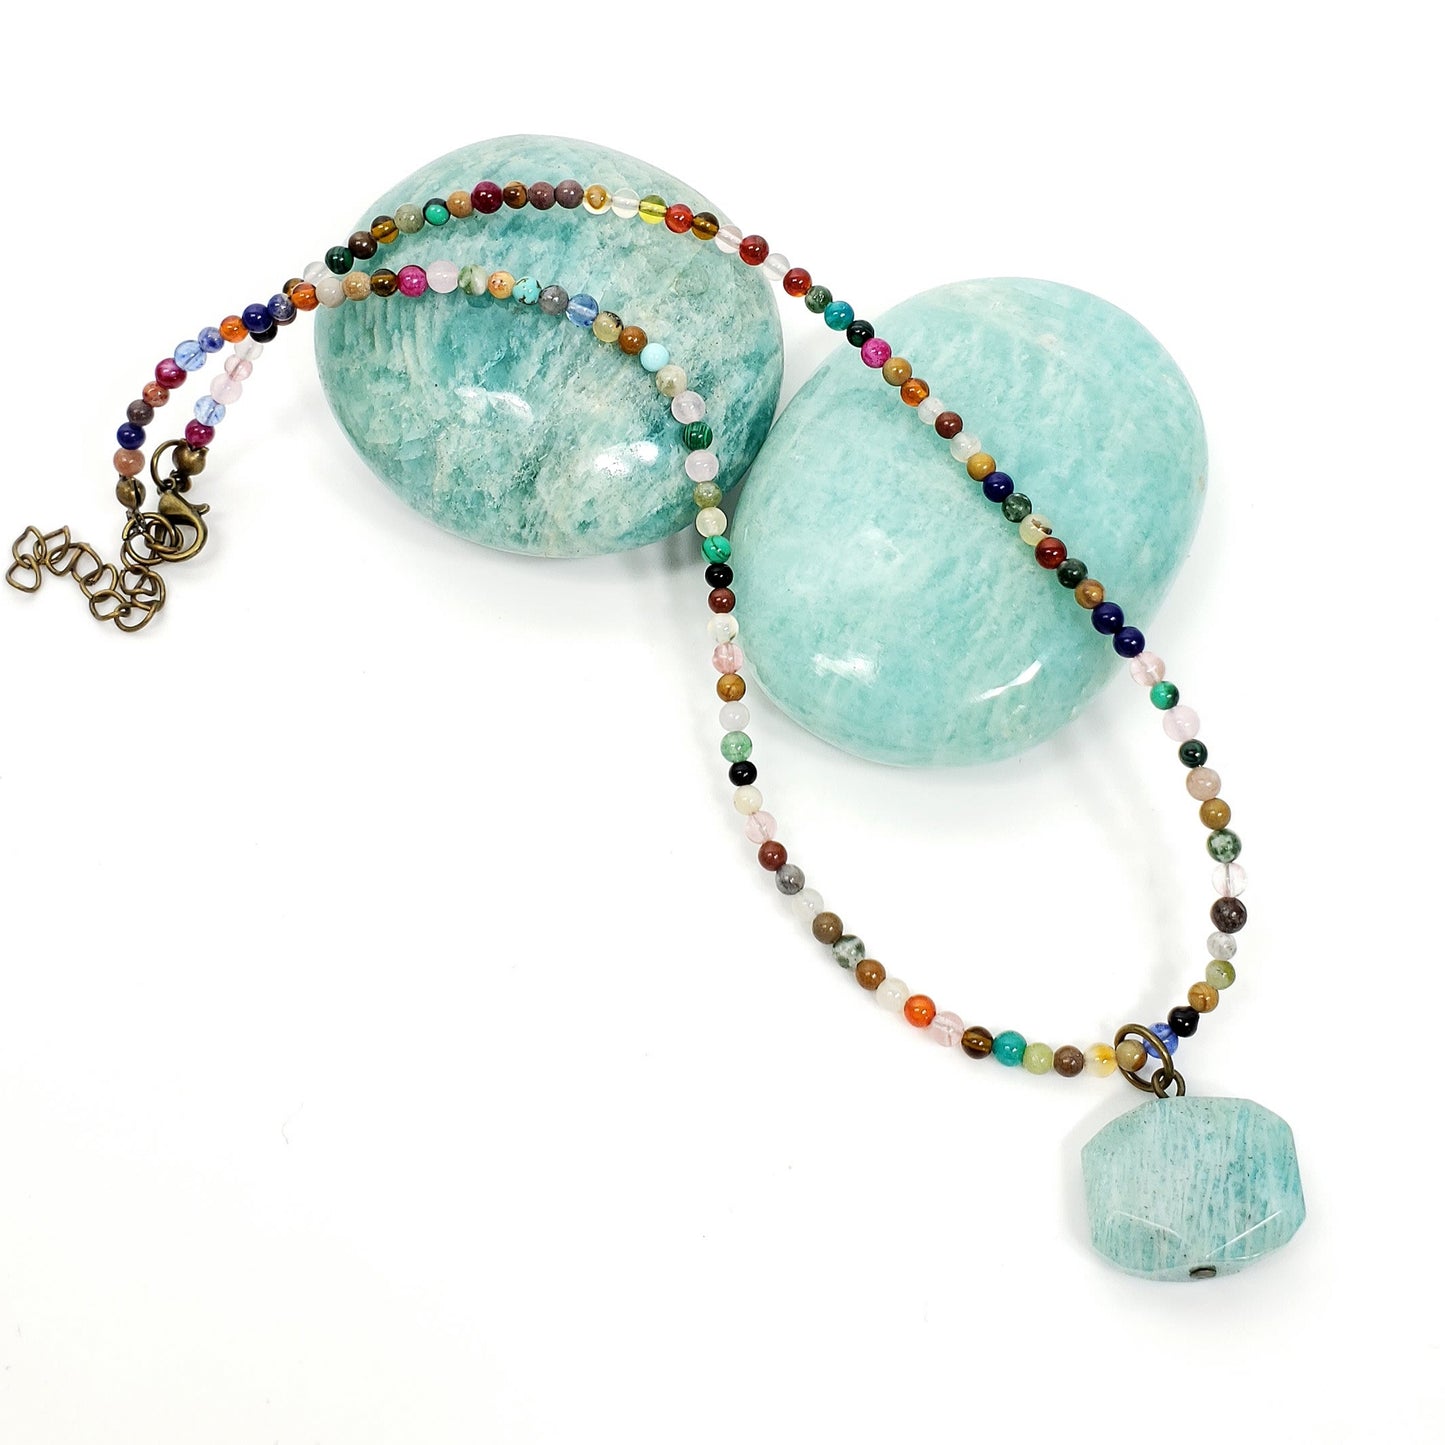 Boho Amazonite Pendant with Mixed Crystal Bead Necklace